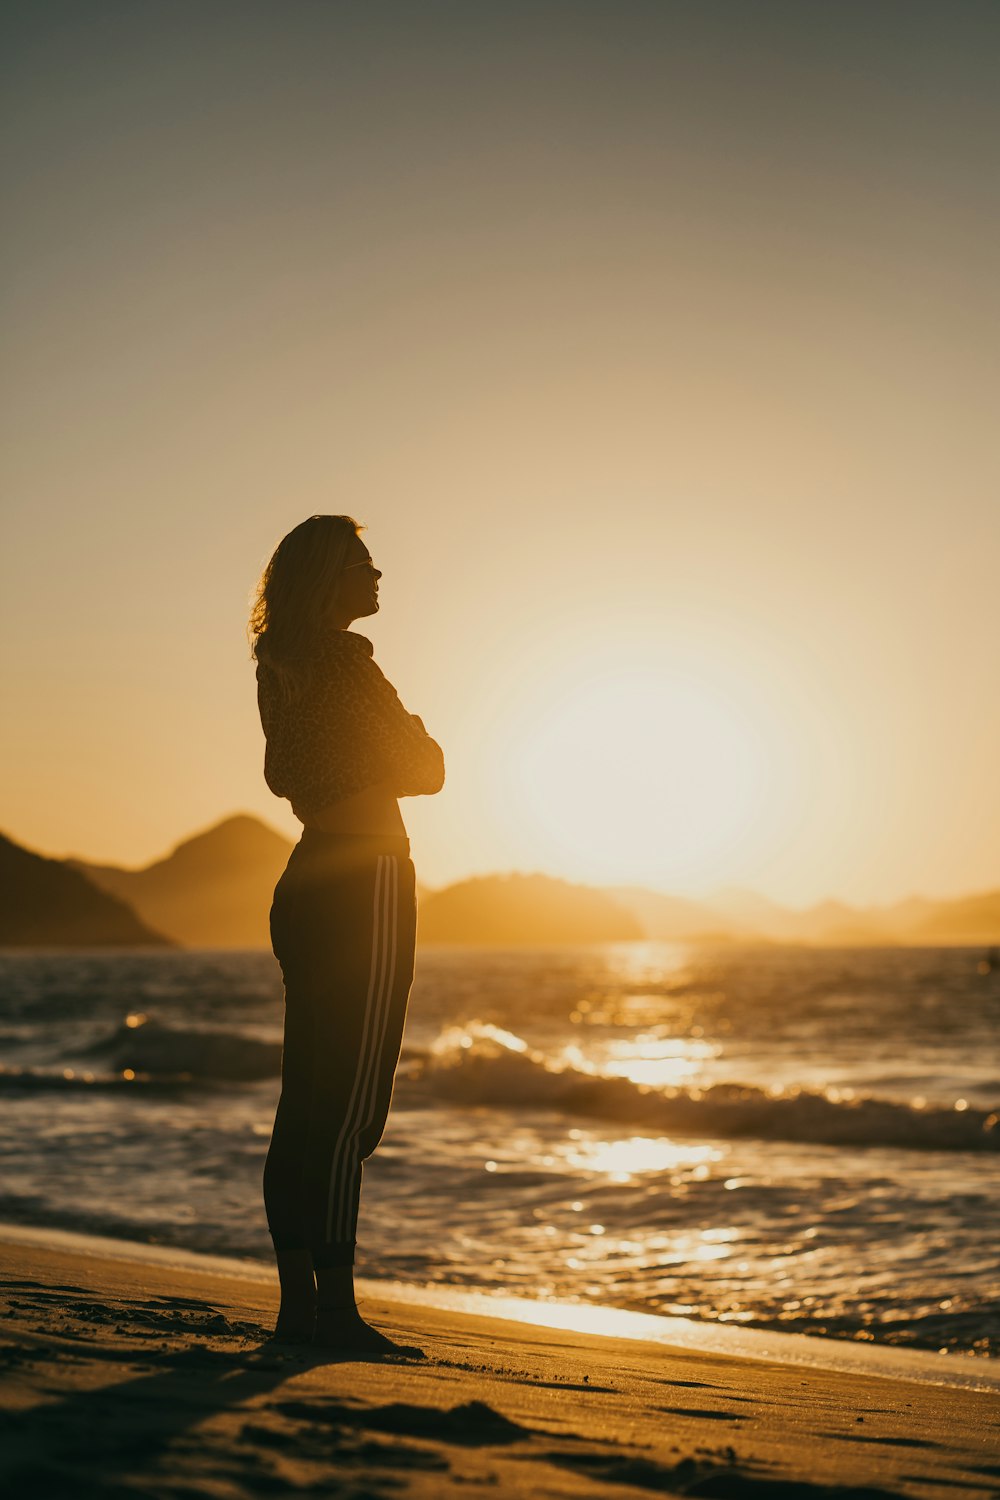 Foto silueta de mujer de pie en la orilla del mar durante la puesta de sol  – Imagen Puesta de sol gratis en Unsplash